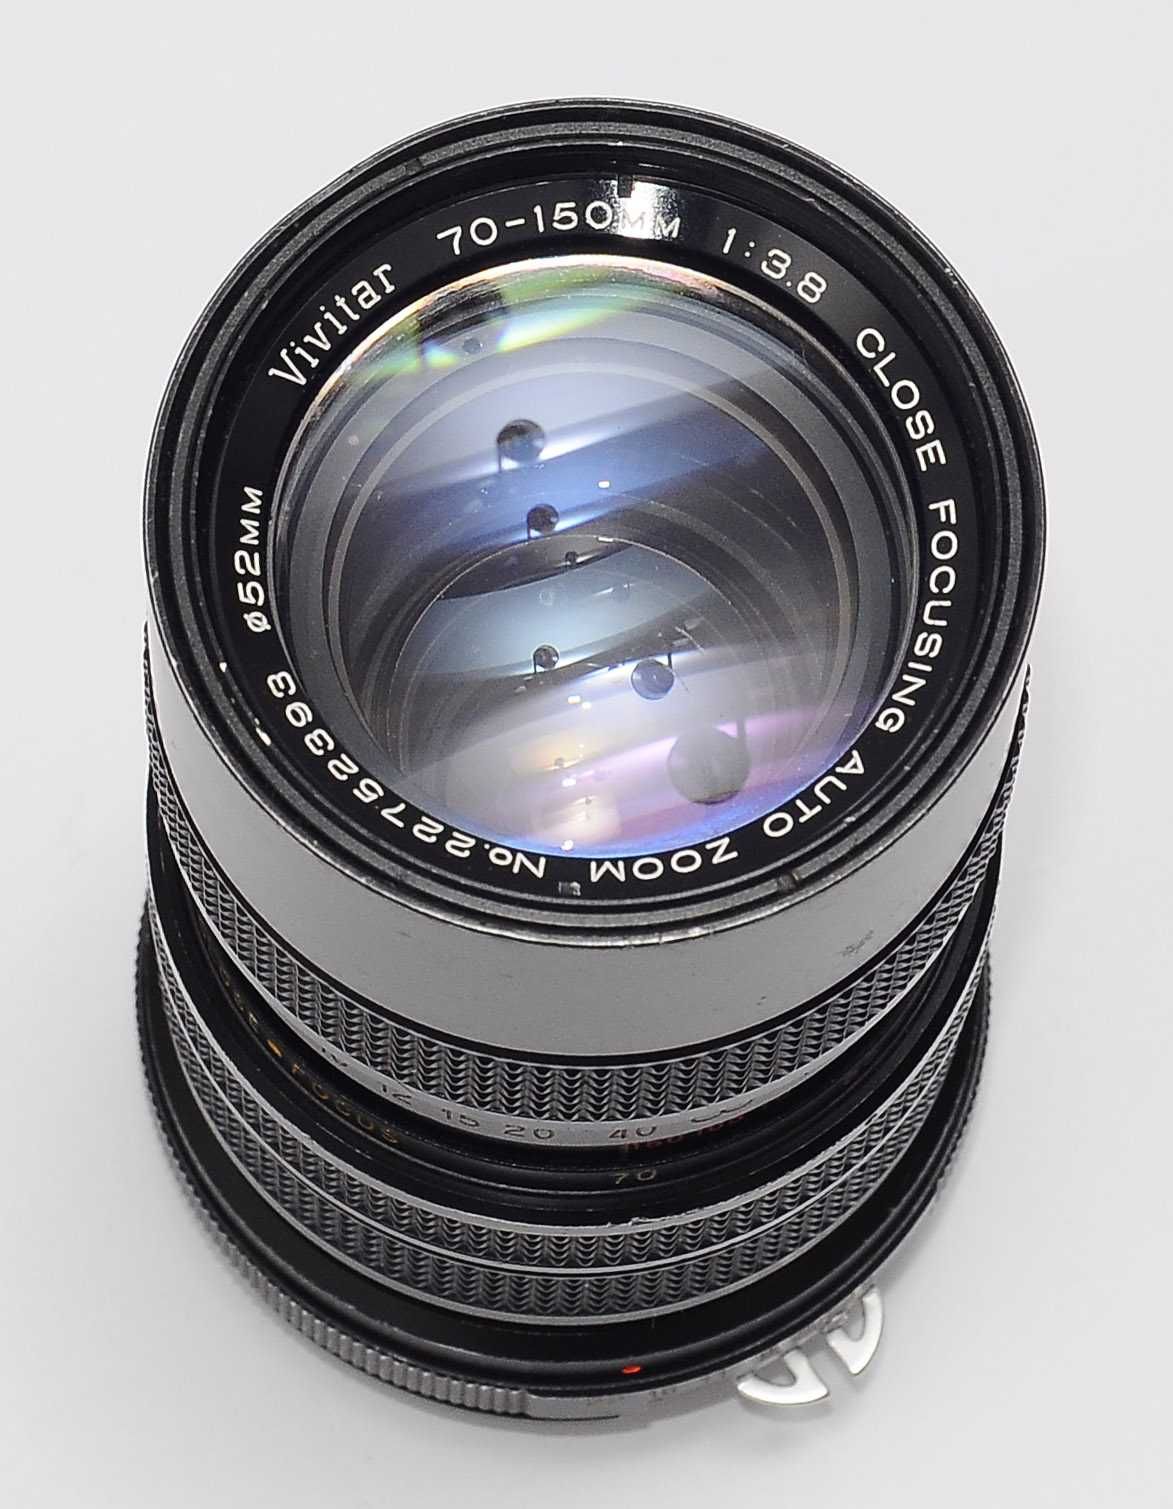 Объектив Nikon Vivitar 70-150mm f/3.8 Zoom Lens SLR для зеркалок Никон